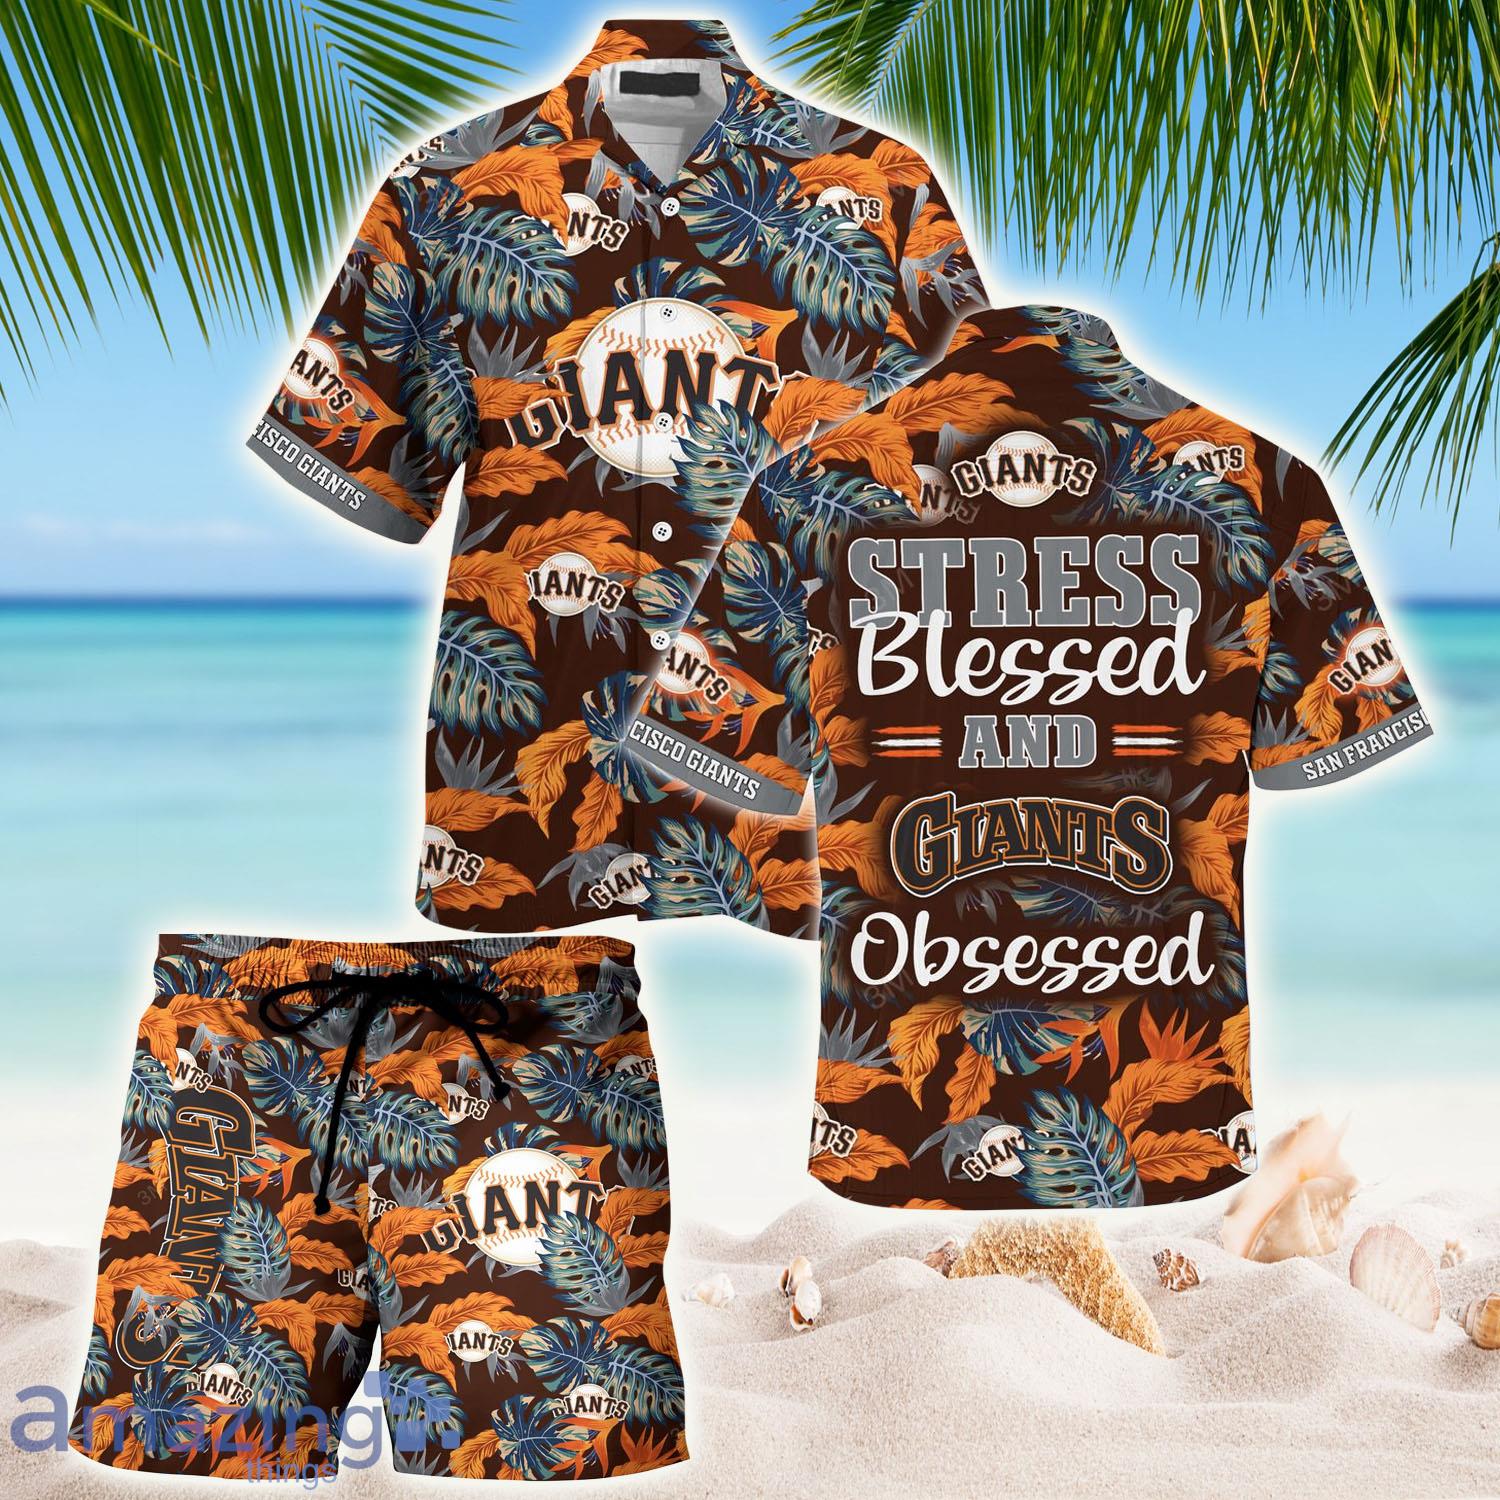 San Francisco Giants Mlb Summer Hawaiian Shirt And Shorts - Banantees